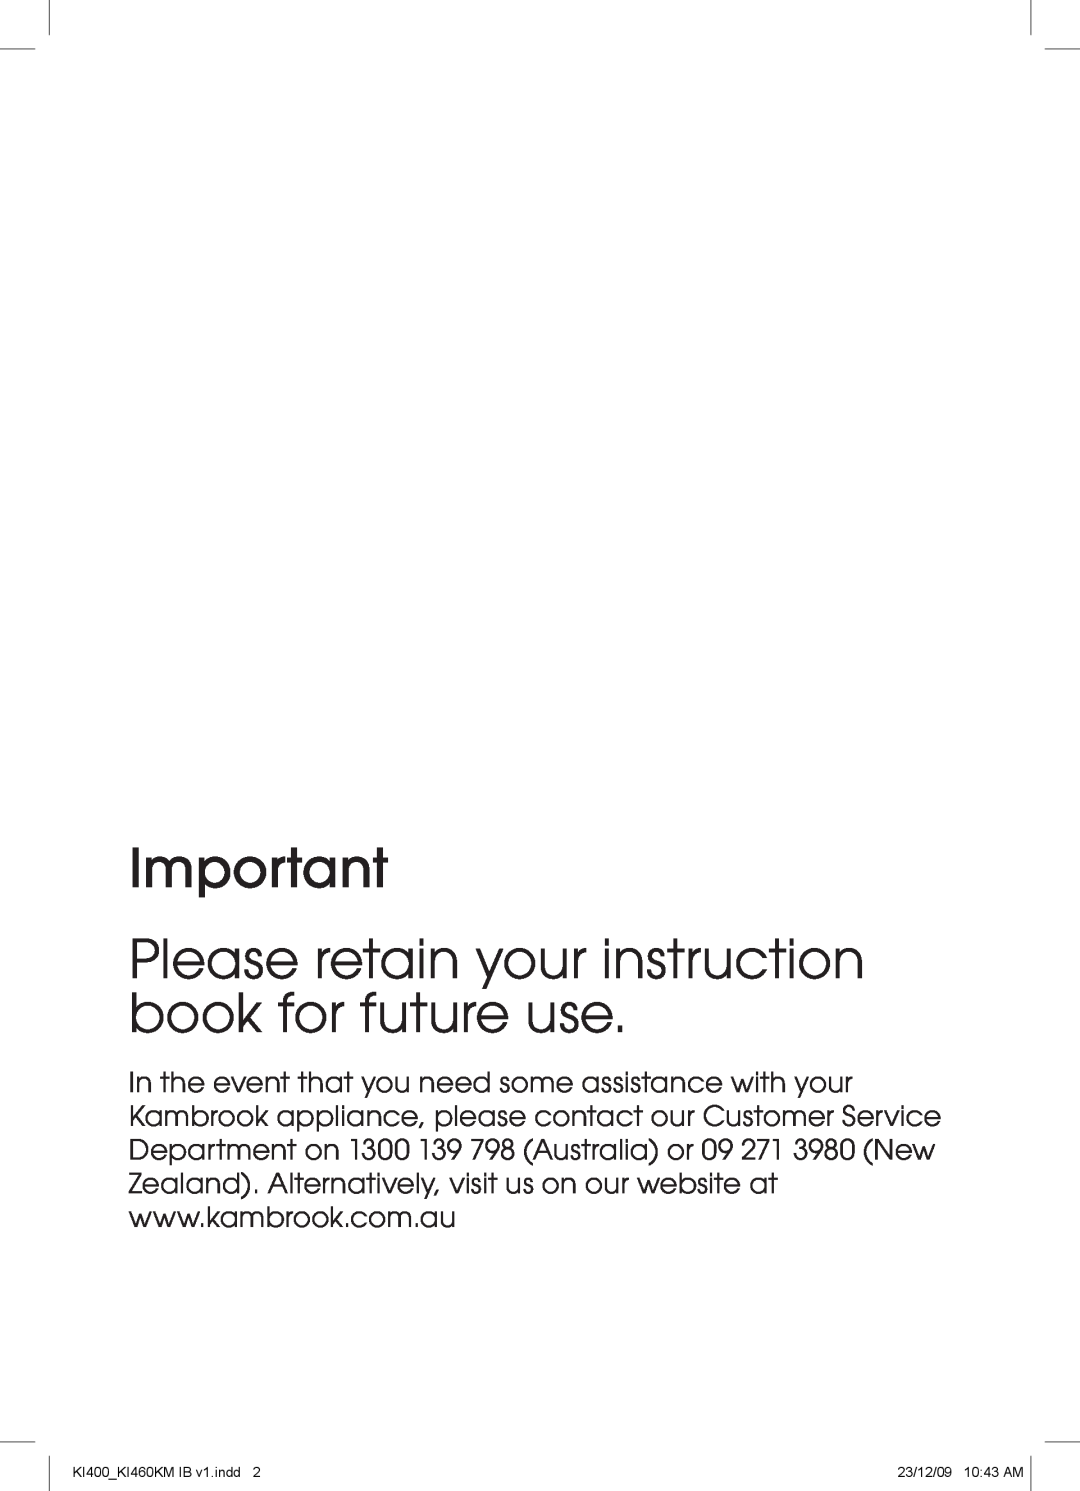 Kambrook manual Please retain your instruction book for future use, KI400KI460KM IB v1.indd, 23/12/09 1043 AM 